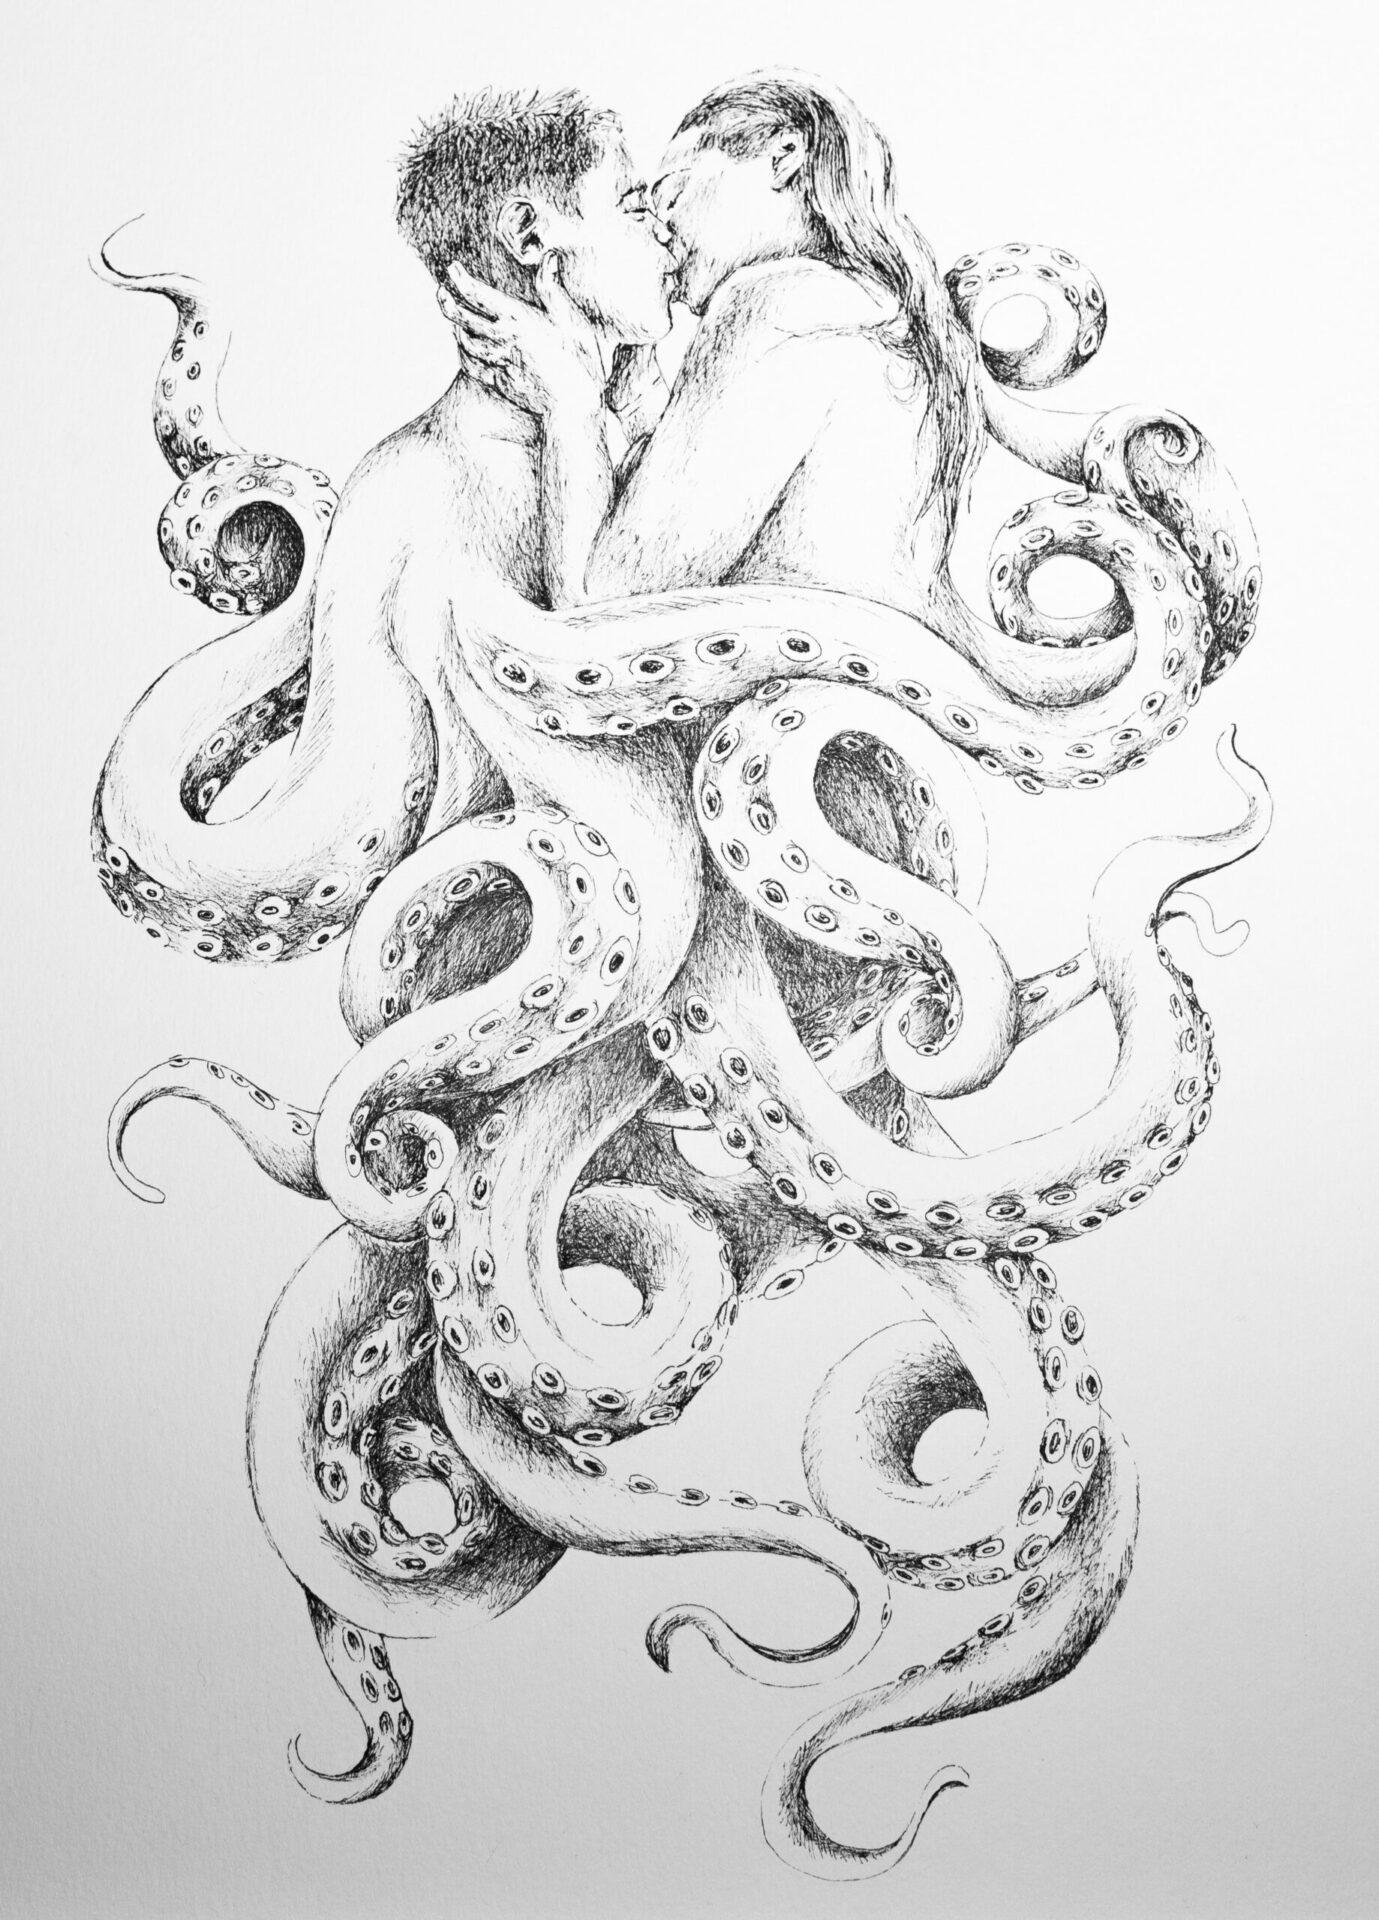 Underwater Love - Art by Belinda Salden